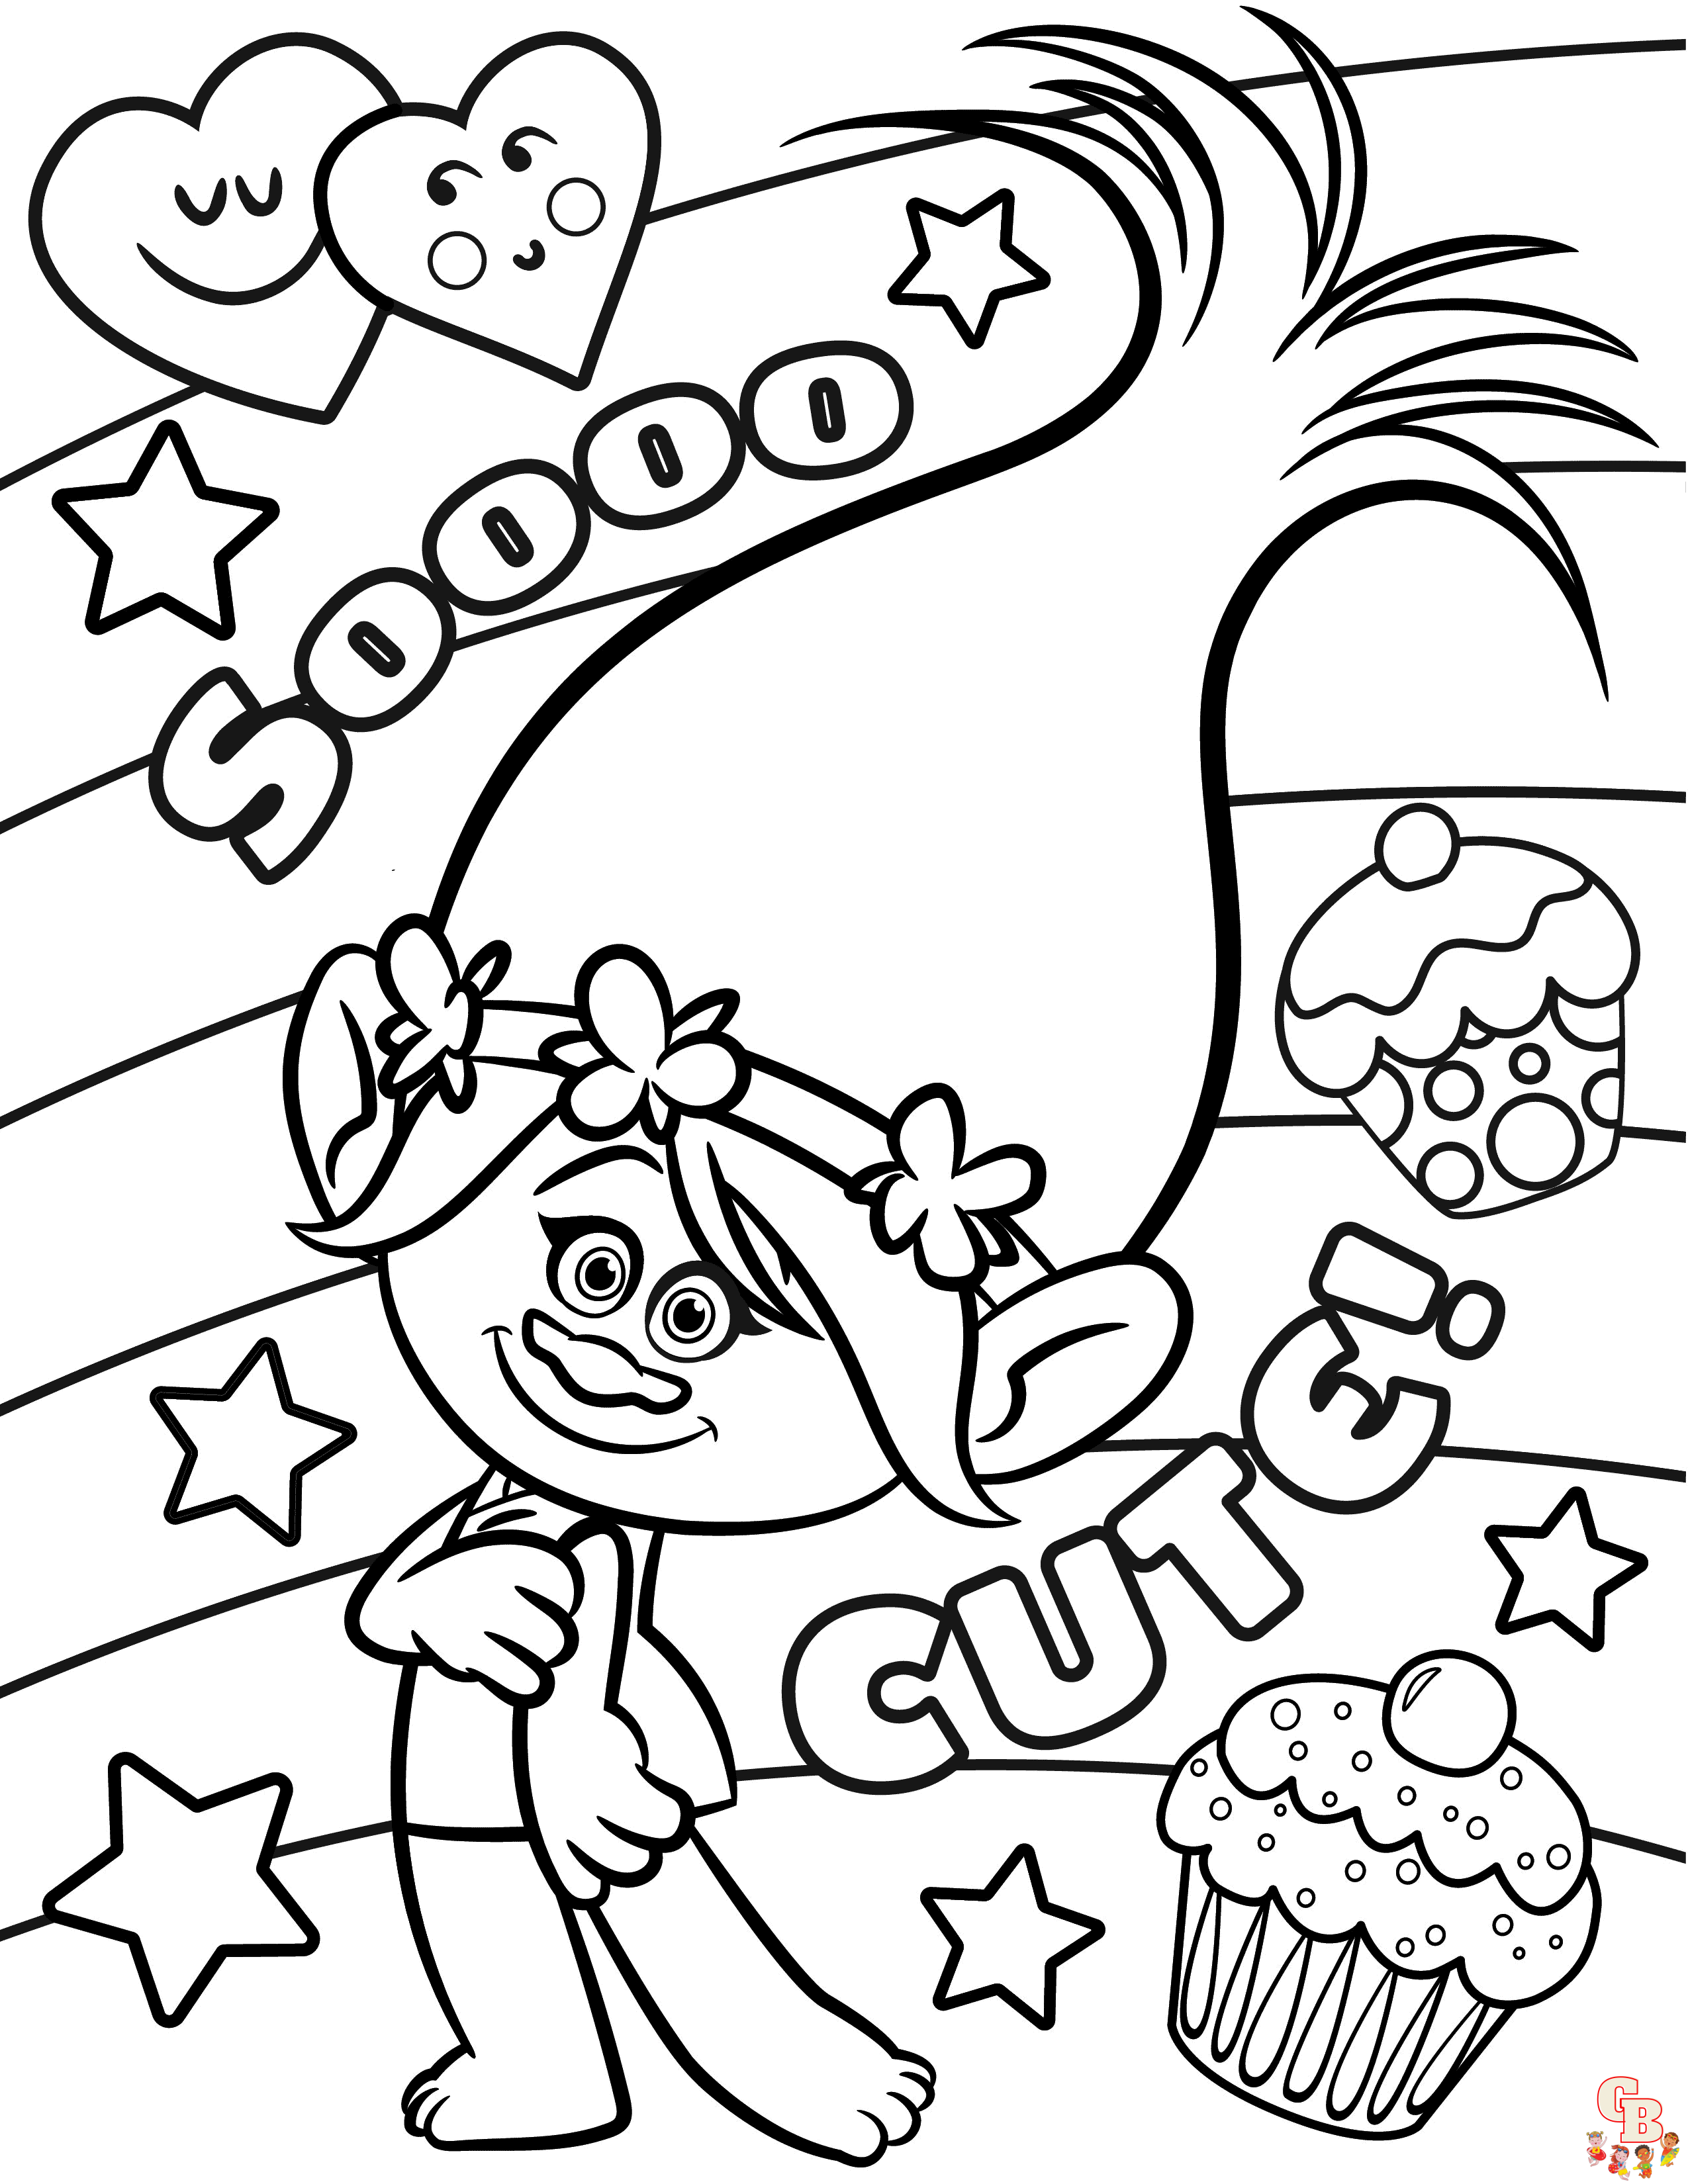 Páginas para colorir da princesa Poppy: folhas divertidas e